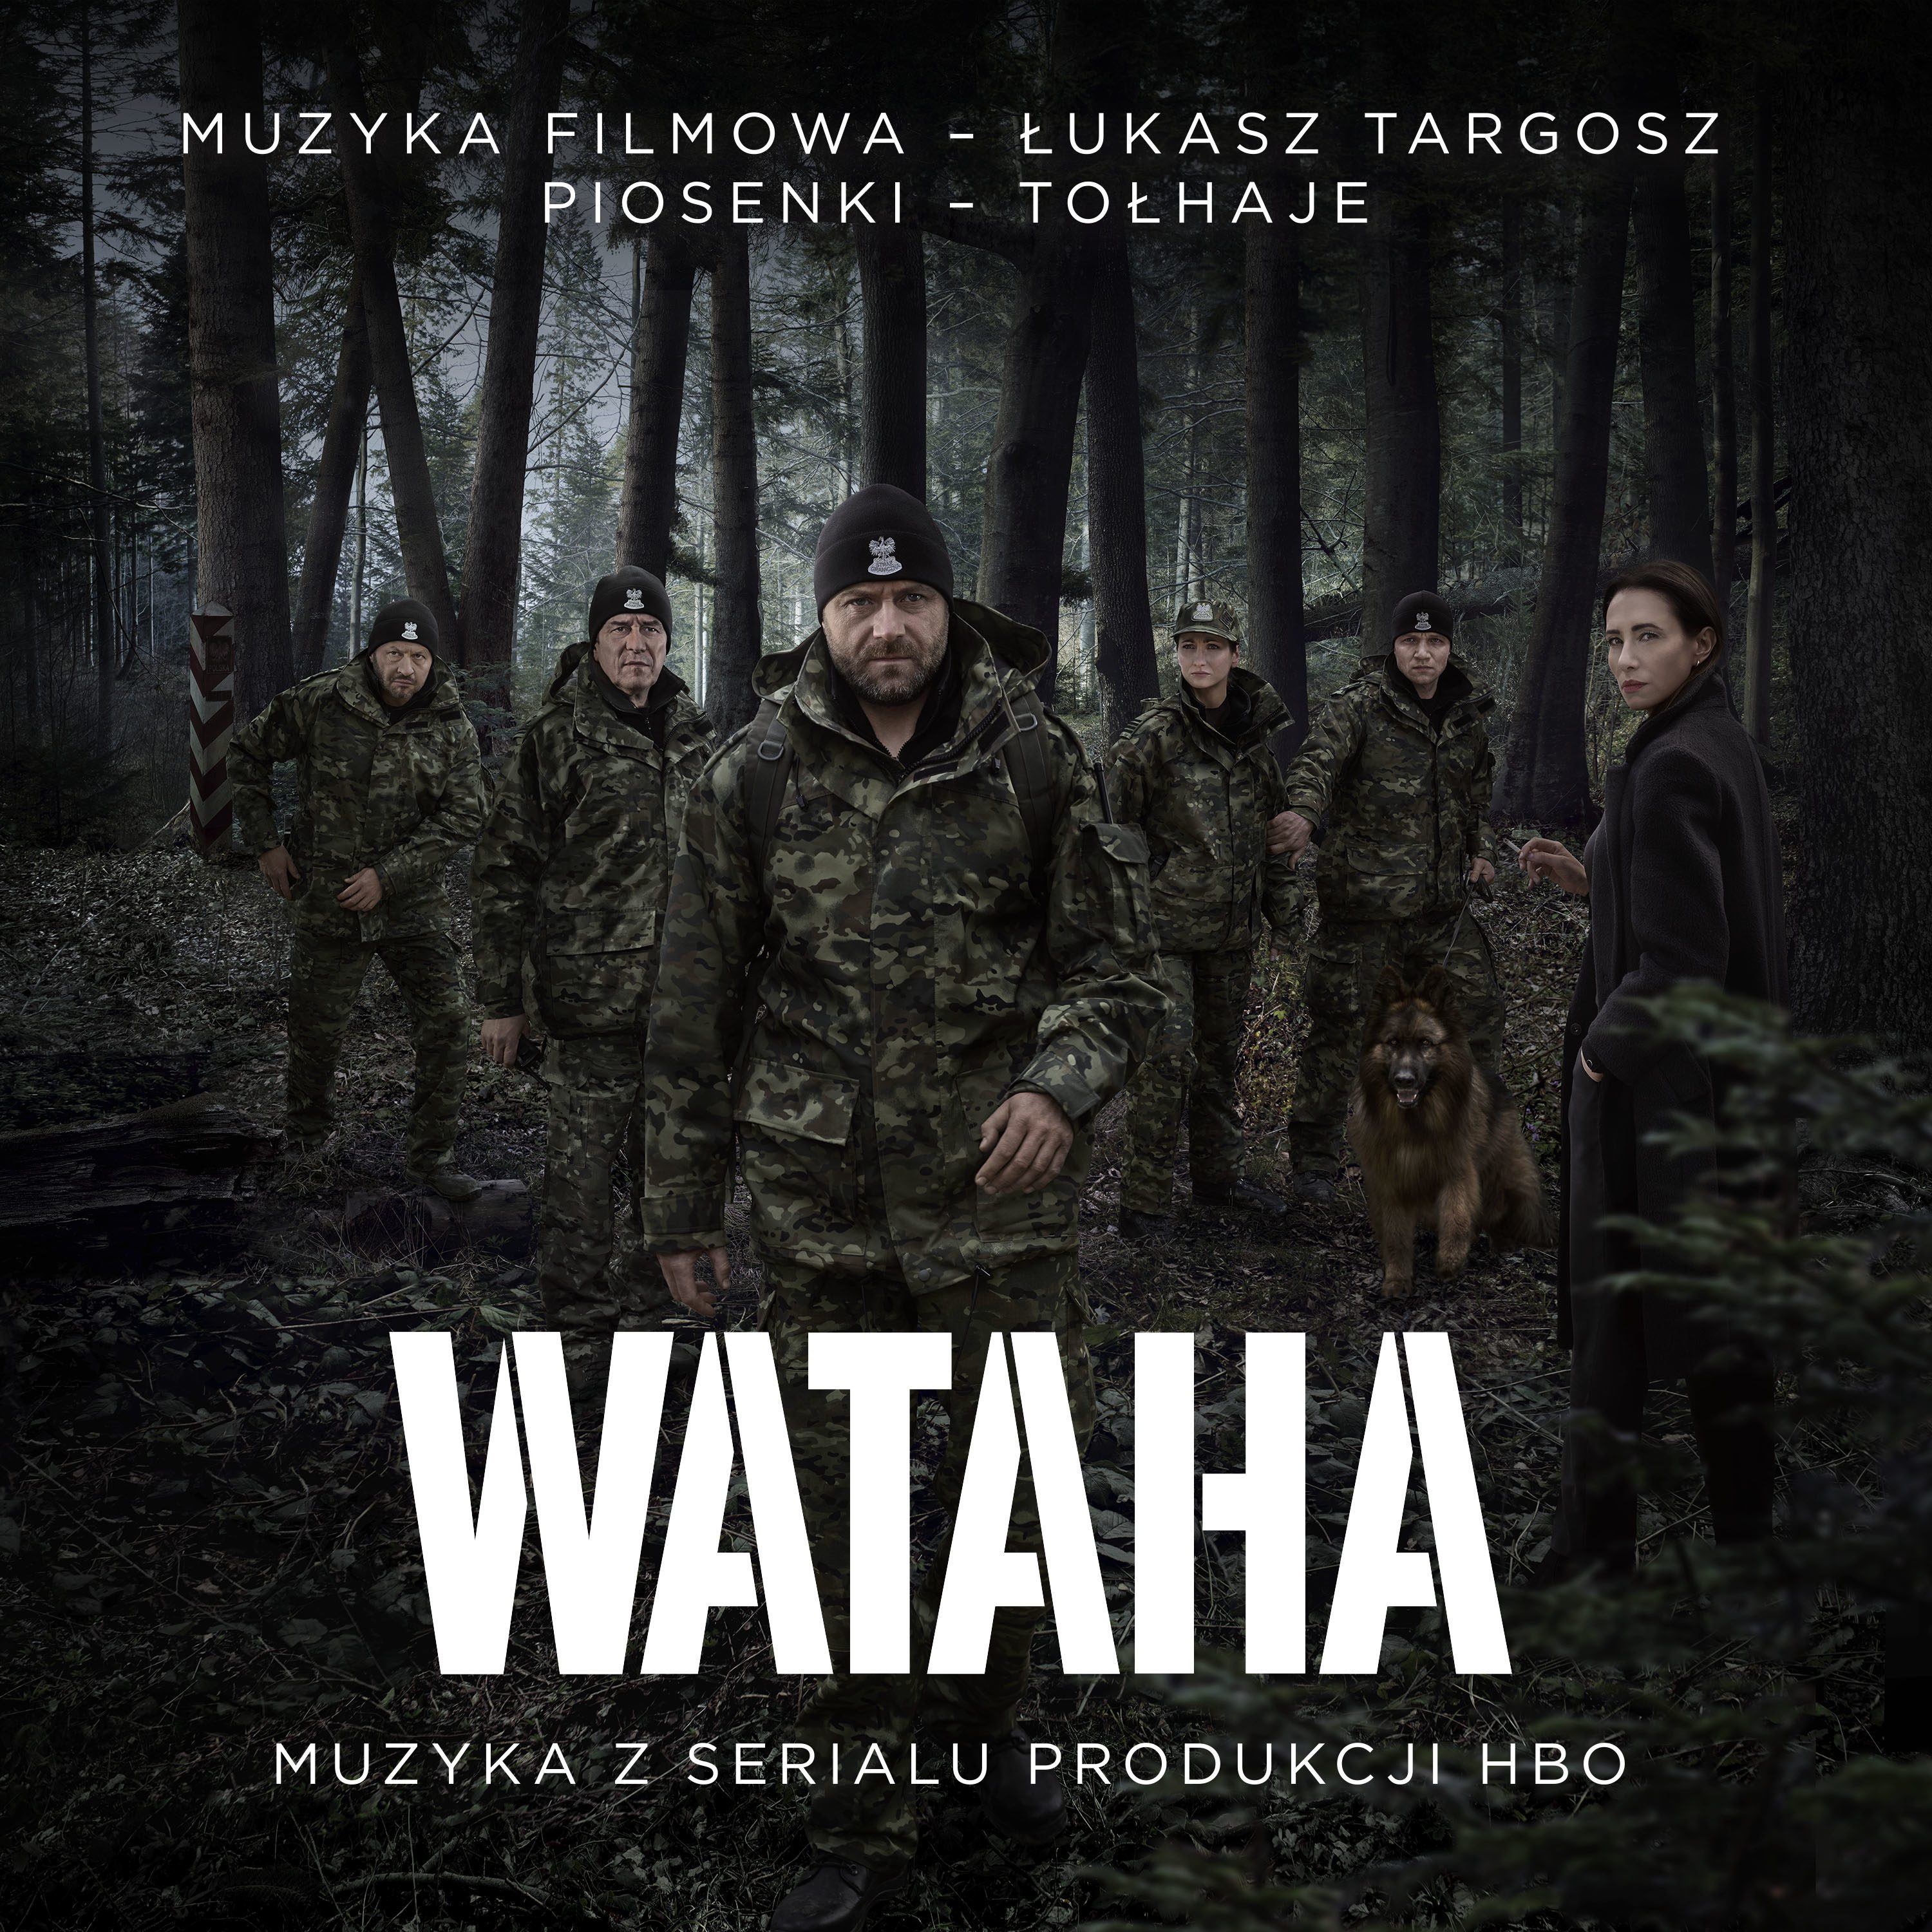 Niebawem premiera płyty z muzyką z serialu „Wataha”